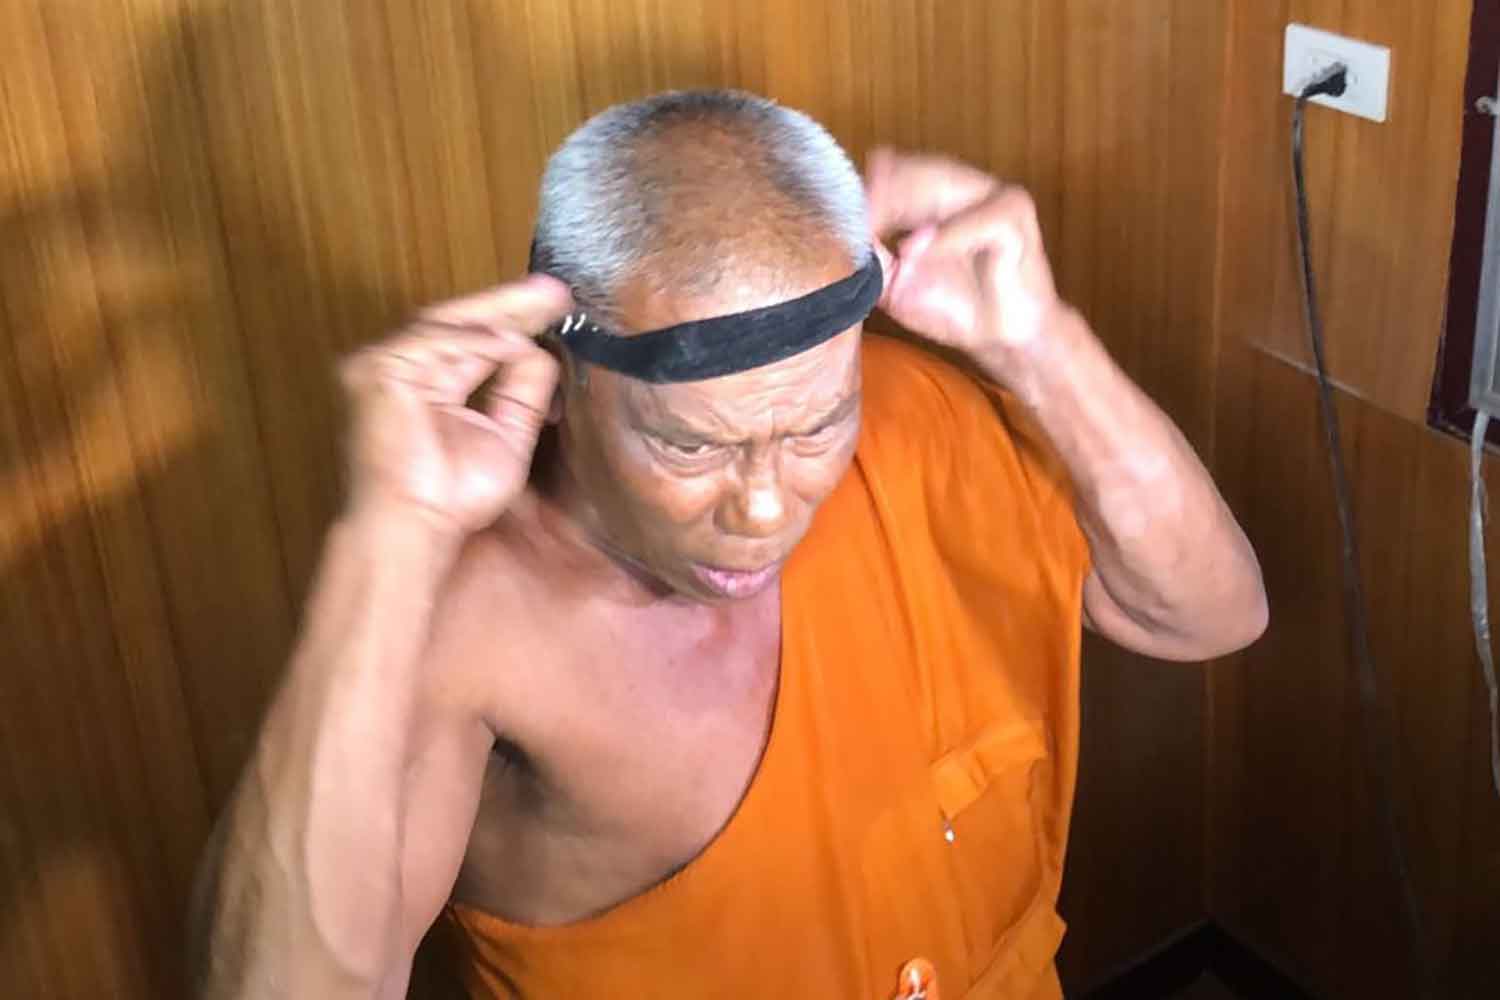 Sư trụ trì Prasartporn Mahapunyo cố biện minh "làm giảm đau đầu" bằng cách dùng băng đô tối 9/2. Ảnh: Bangkok Post